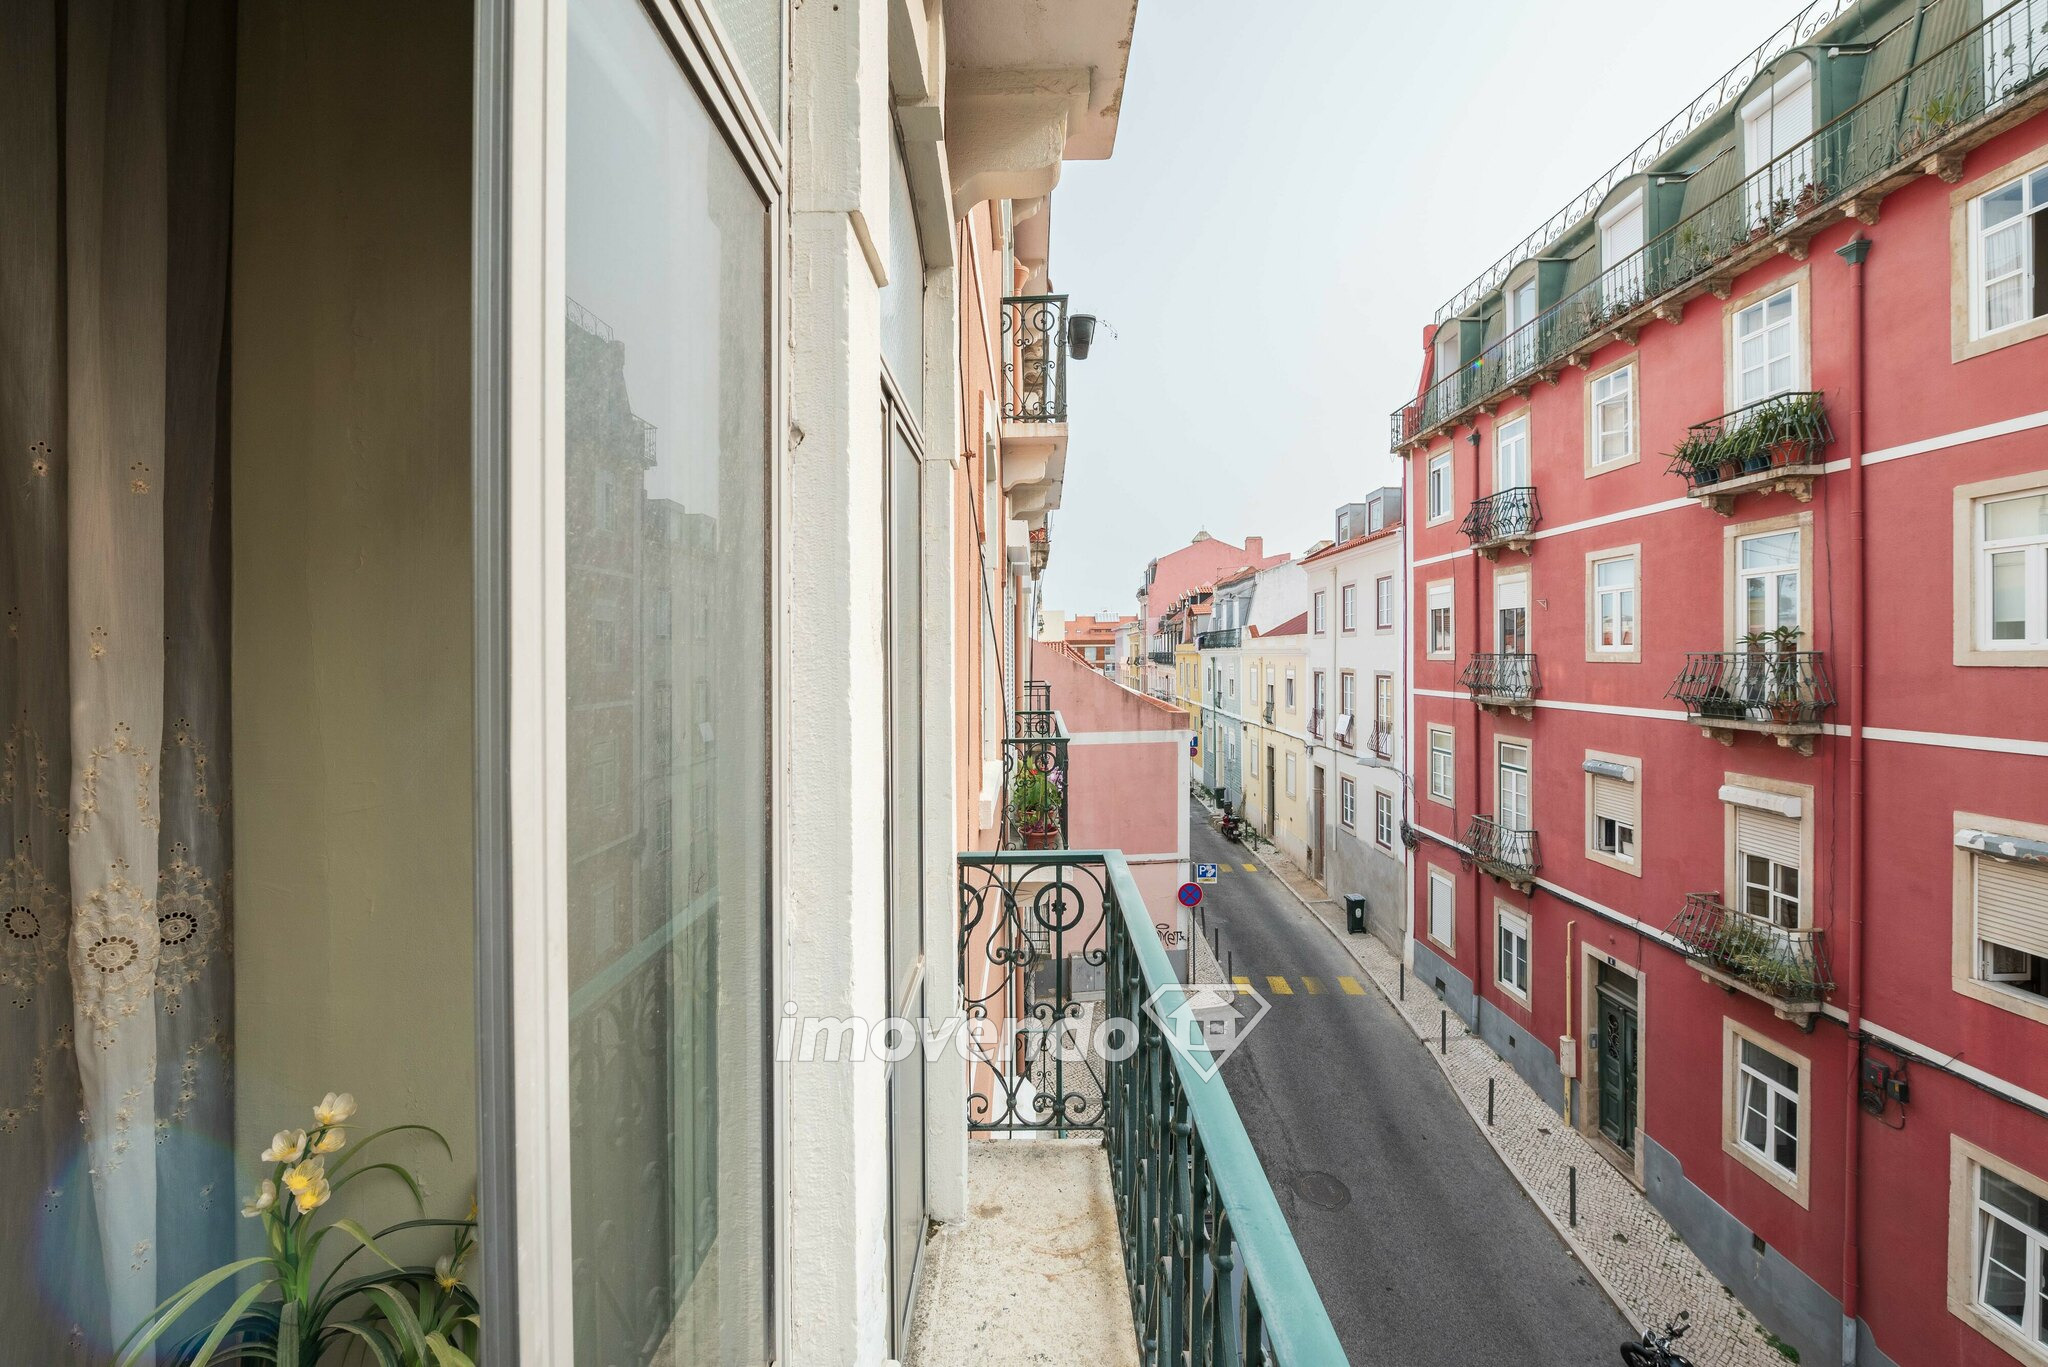 Apartamento T4+1 mobilado, com áreas amplas, na Estefânia, em Lisboa